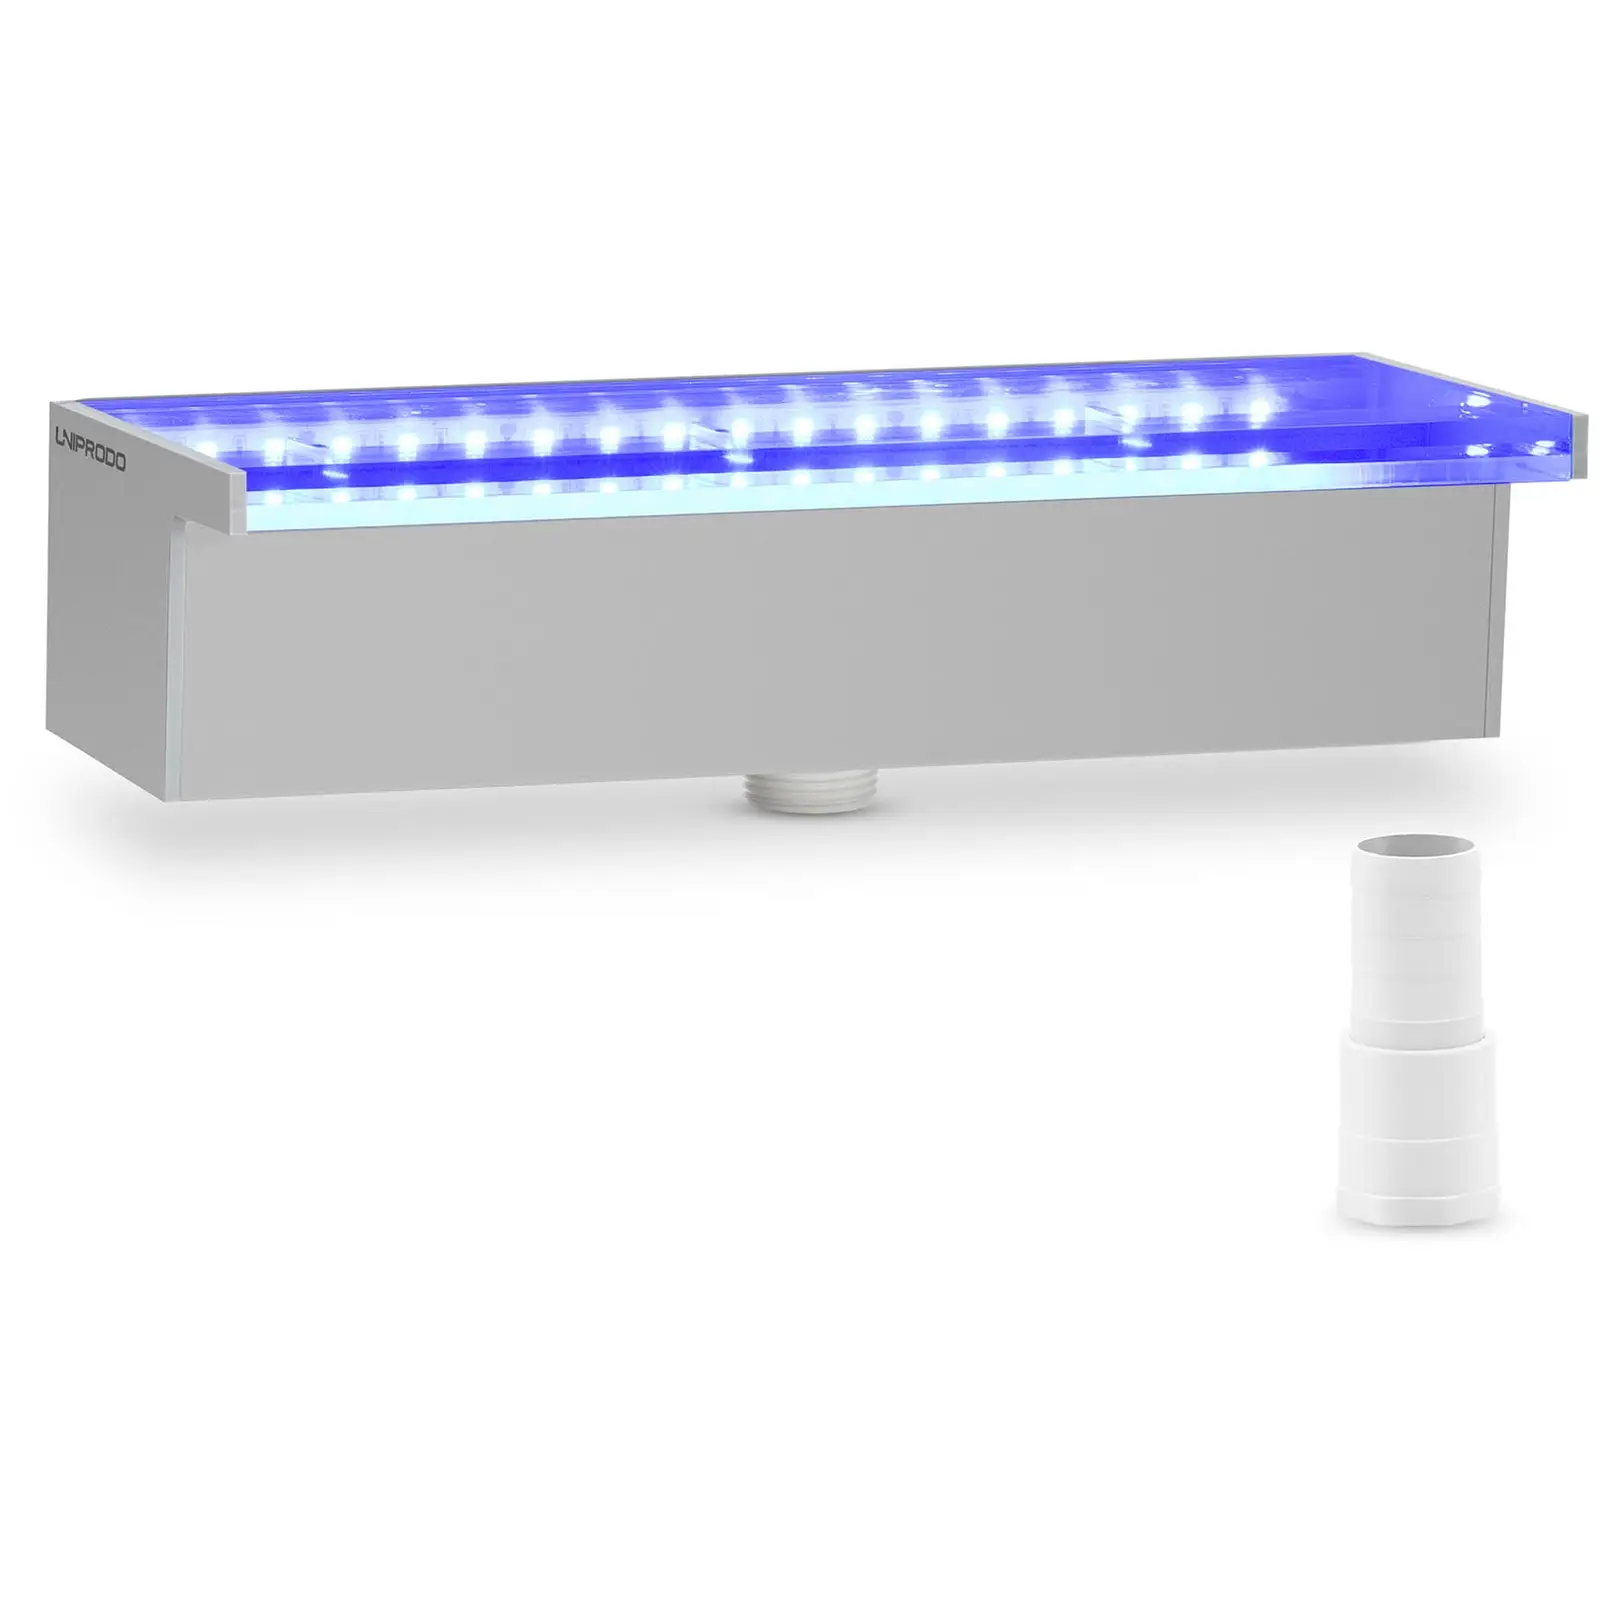 Cascata da giardino - 30 cm - Illuminazione LED - Blu, bianca - Ampia uscita dell'acqua